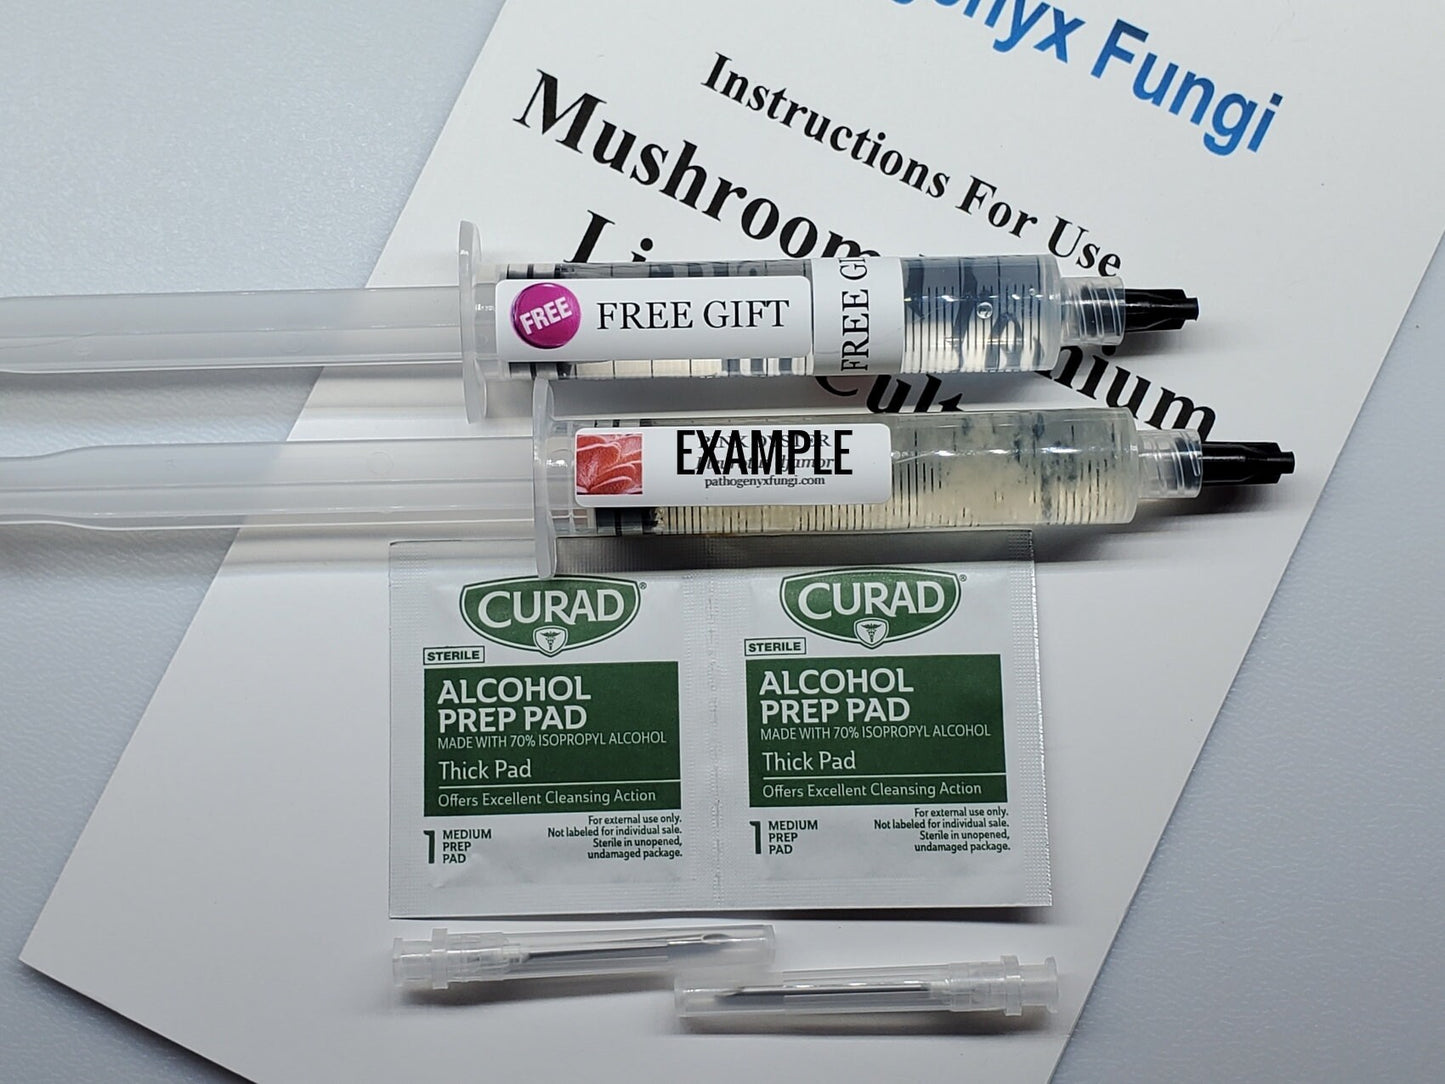 OREGON POLYPORE Reishi Mushroom, liquid culture syringe, Premium Mycelium™